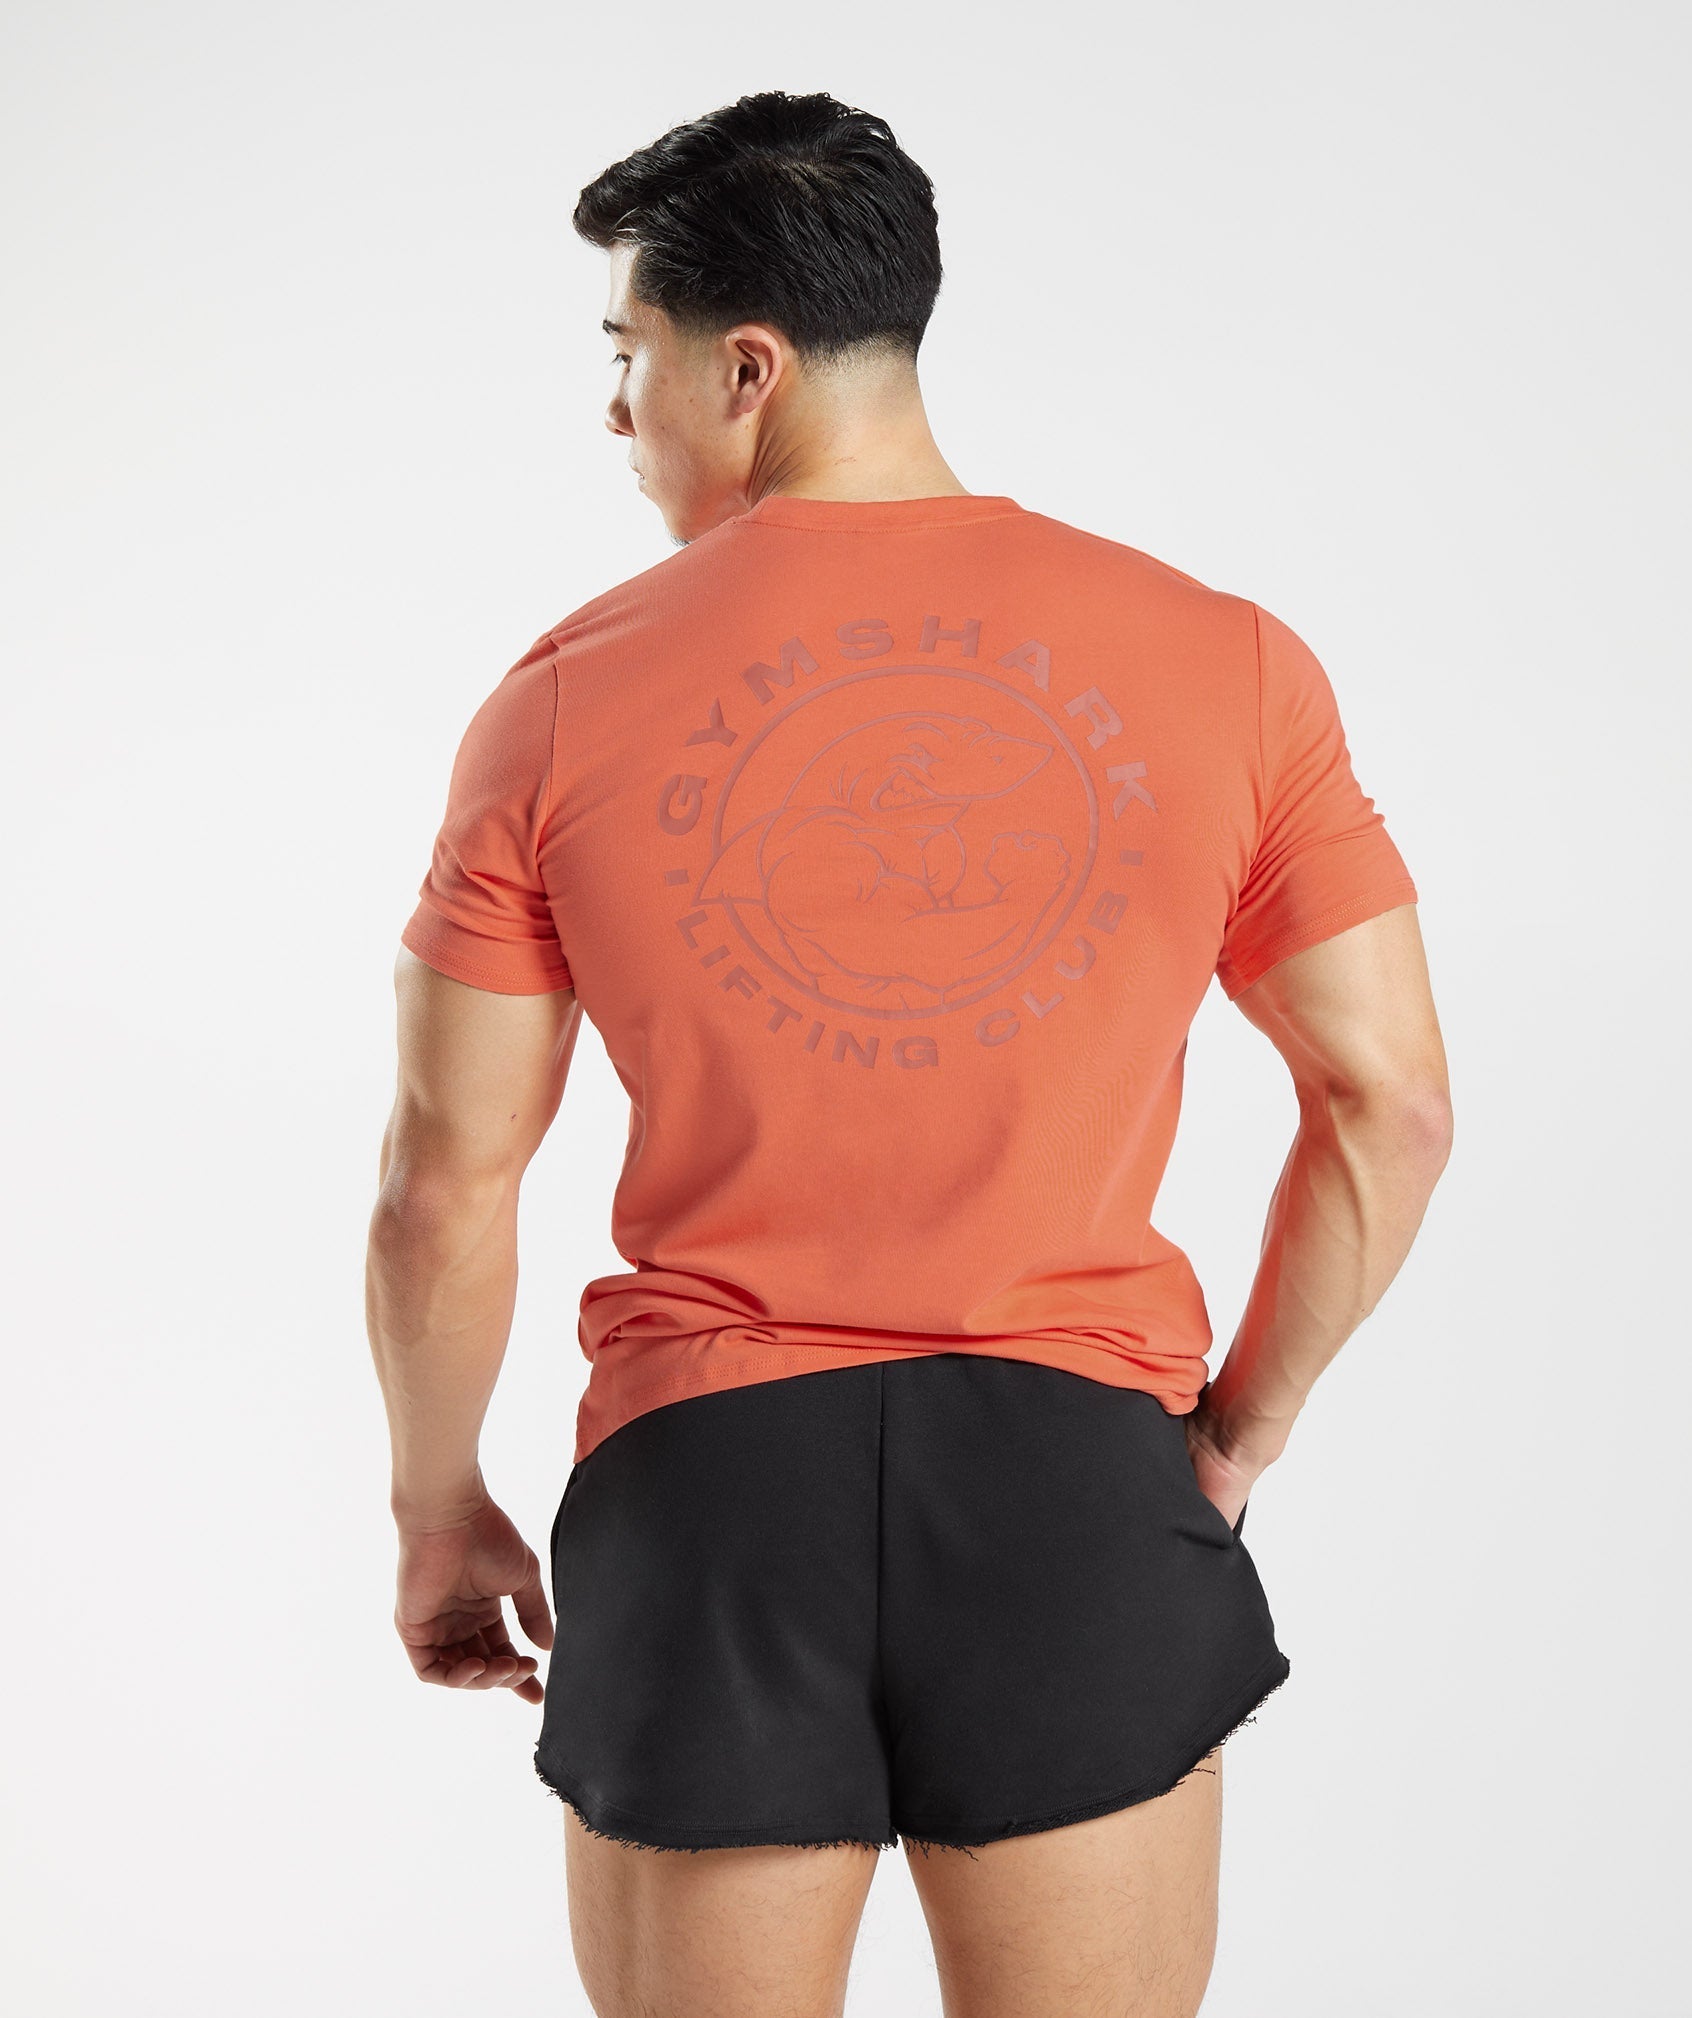 Gymshark Orange T-Shirts for Men